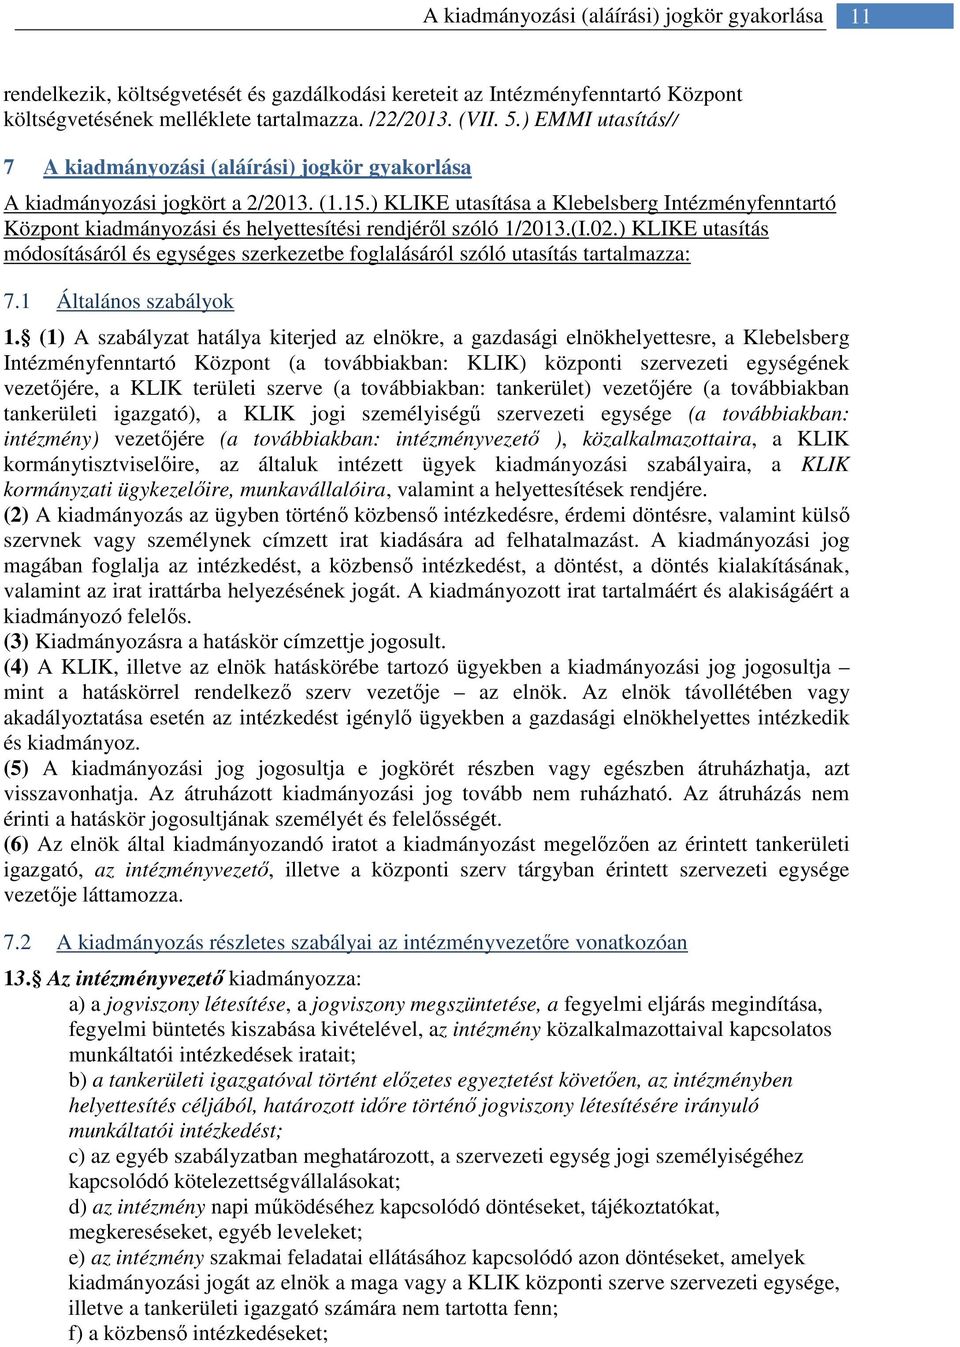 ) KLIKE utasítása a Klebelsberg Intézményfenntartó Központ kiadmányozási és helyettesítési rendjéről szóló 1/2013.(I.02.